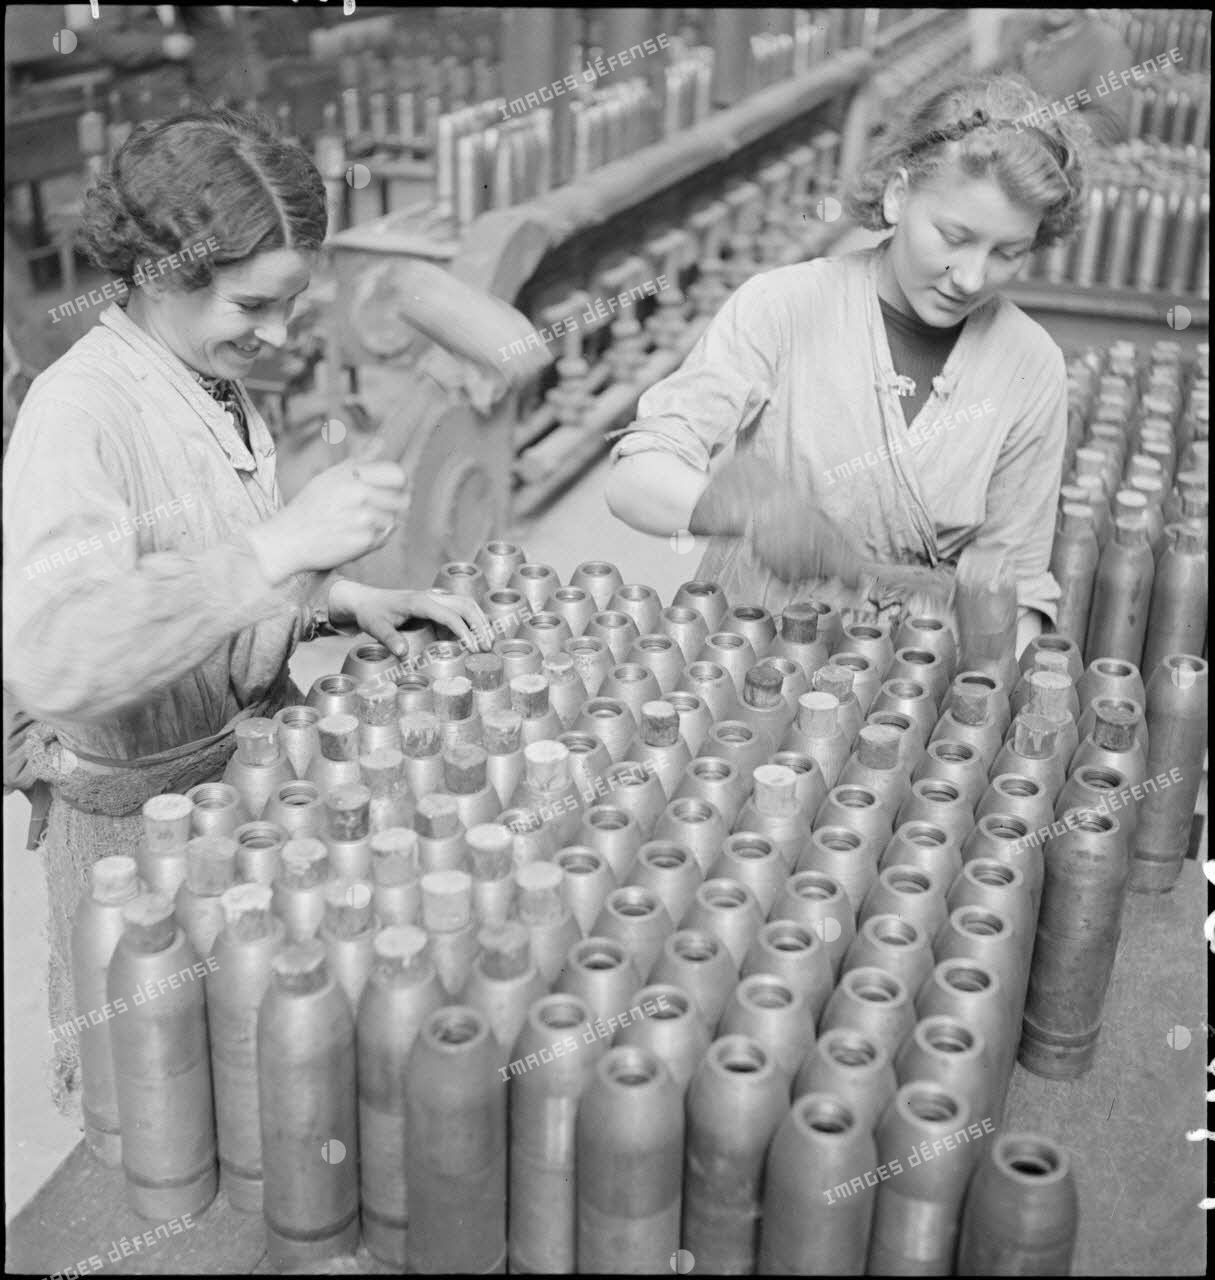 Dans une cartoucherie ou un atelier de fabrication, des ouvrières ferment des enveloppes d'obus de 75 mm avec des bouchons de bois.